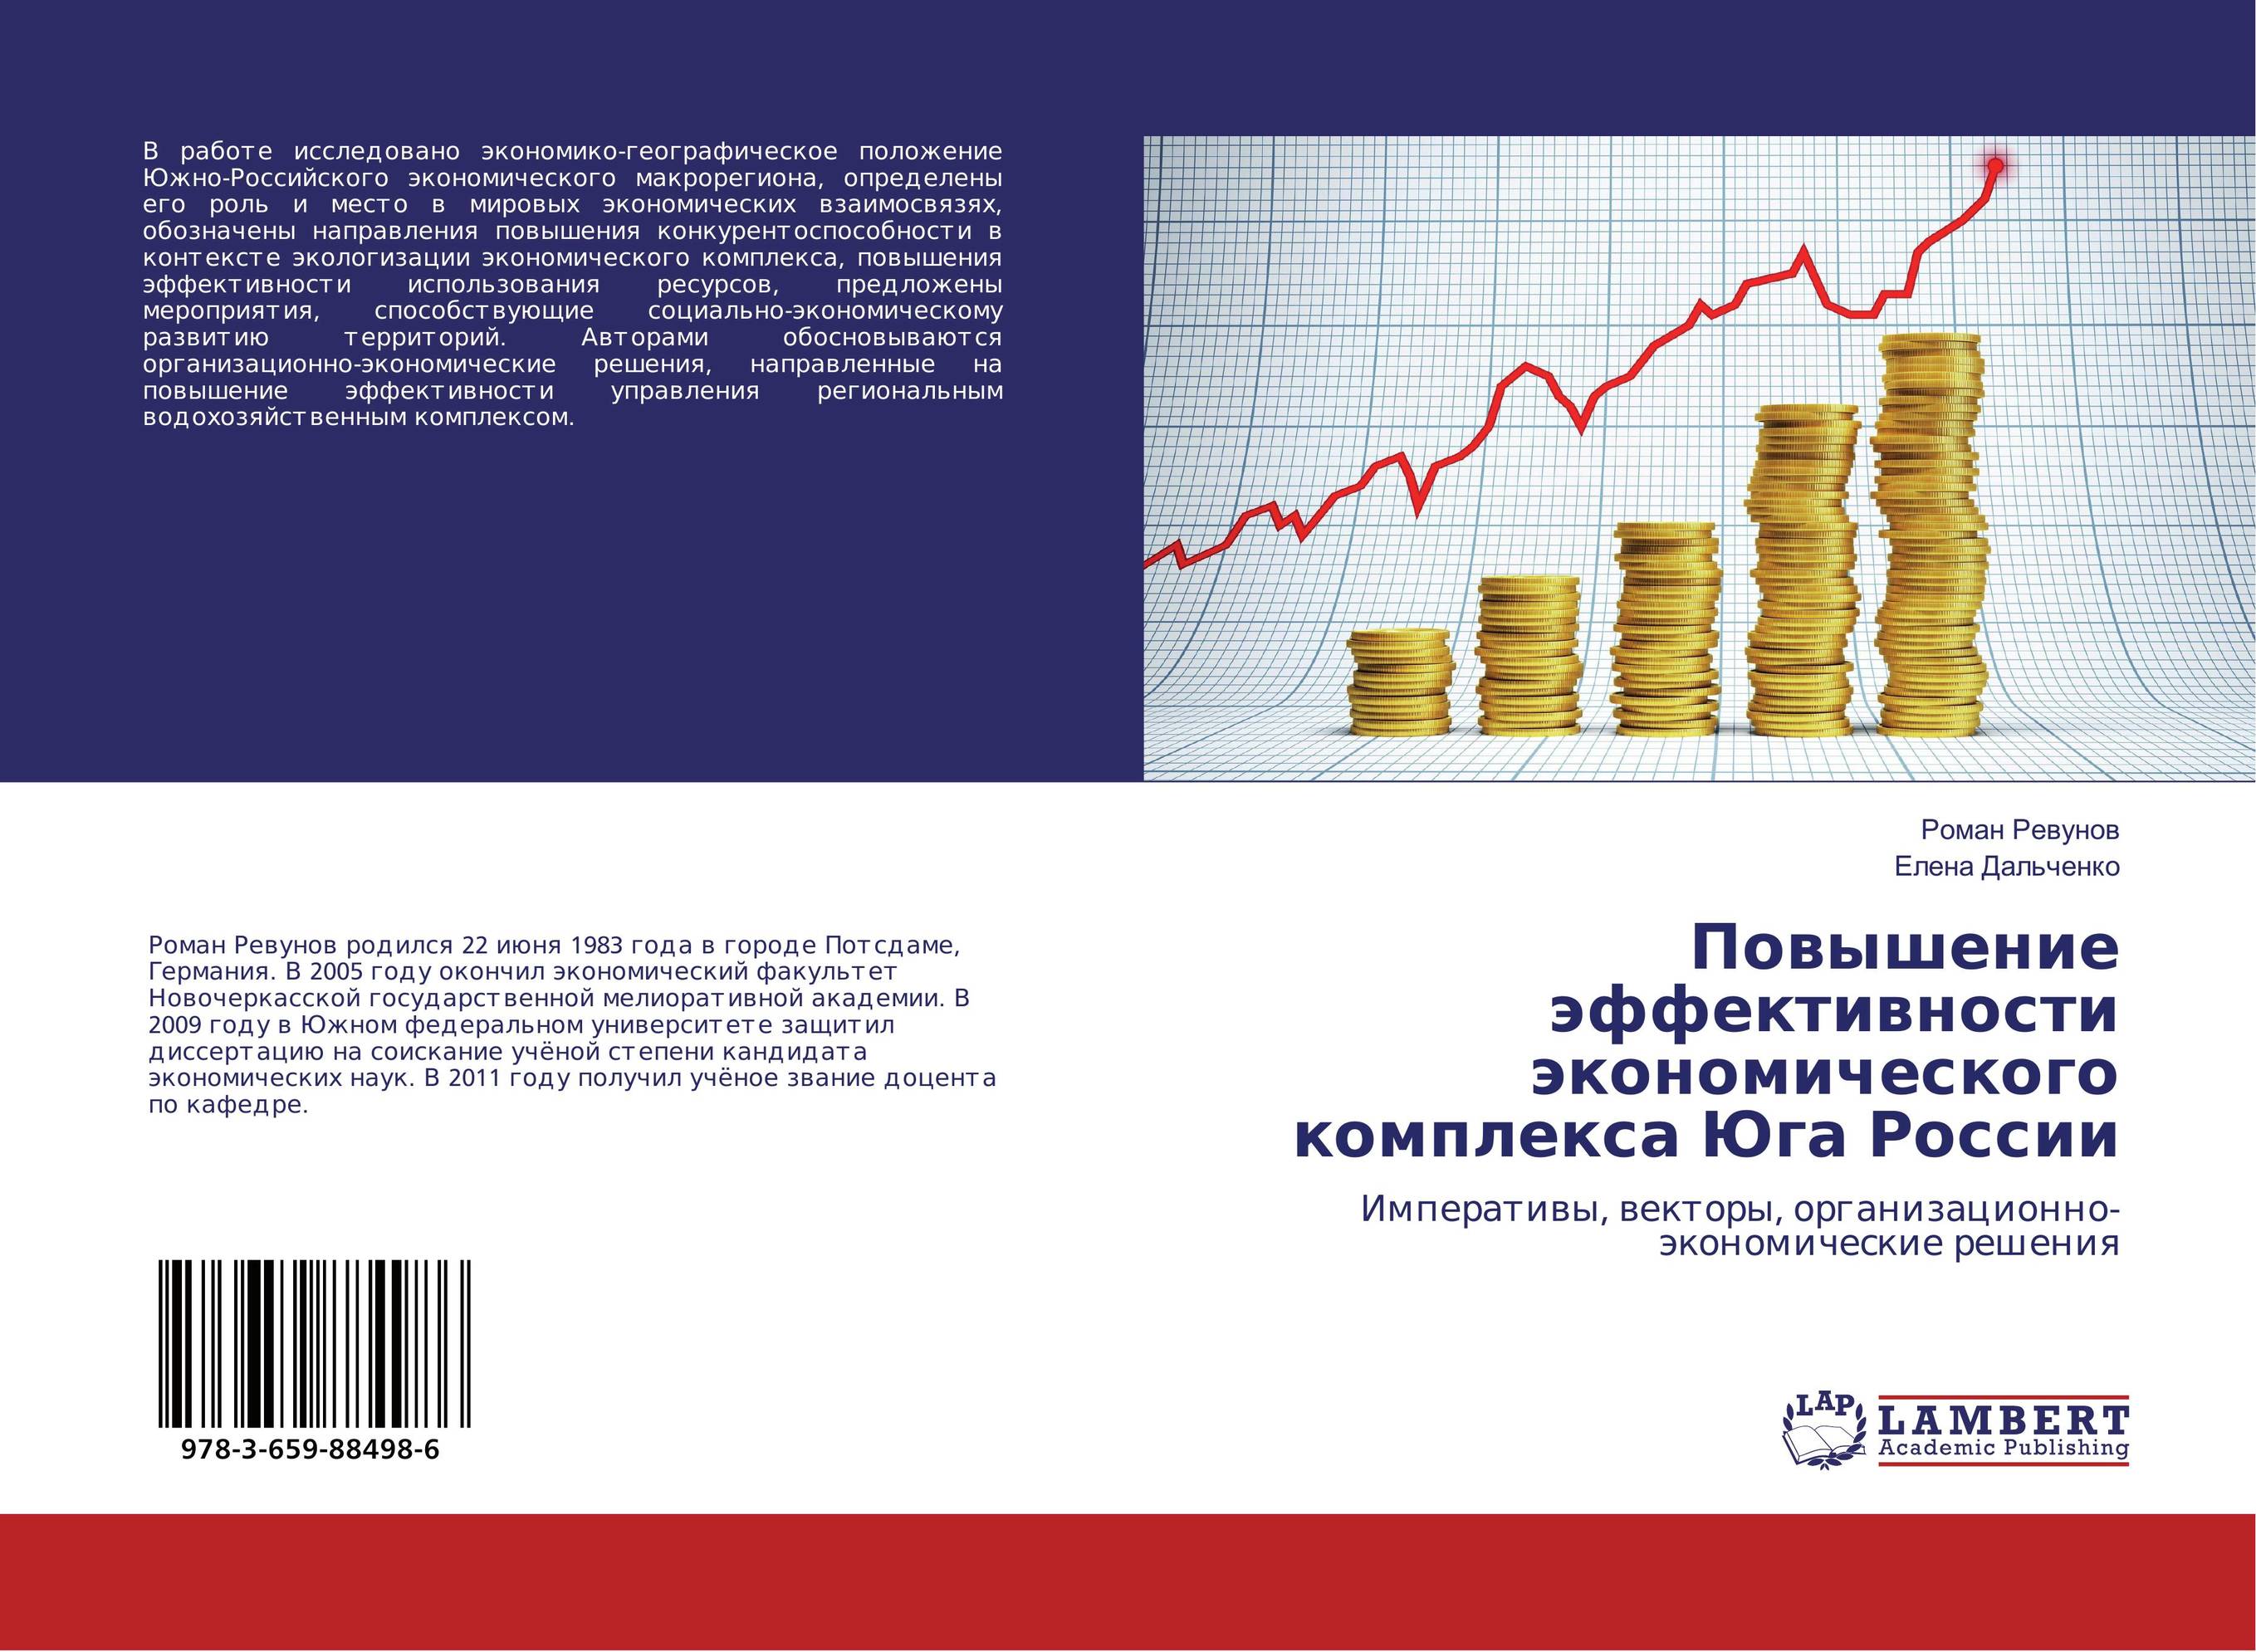 
        Повышение эффективности экономического комплекса Юга России. Императивы, векторы, организационно-экономические решения.
      